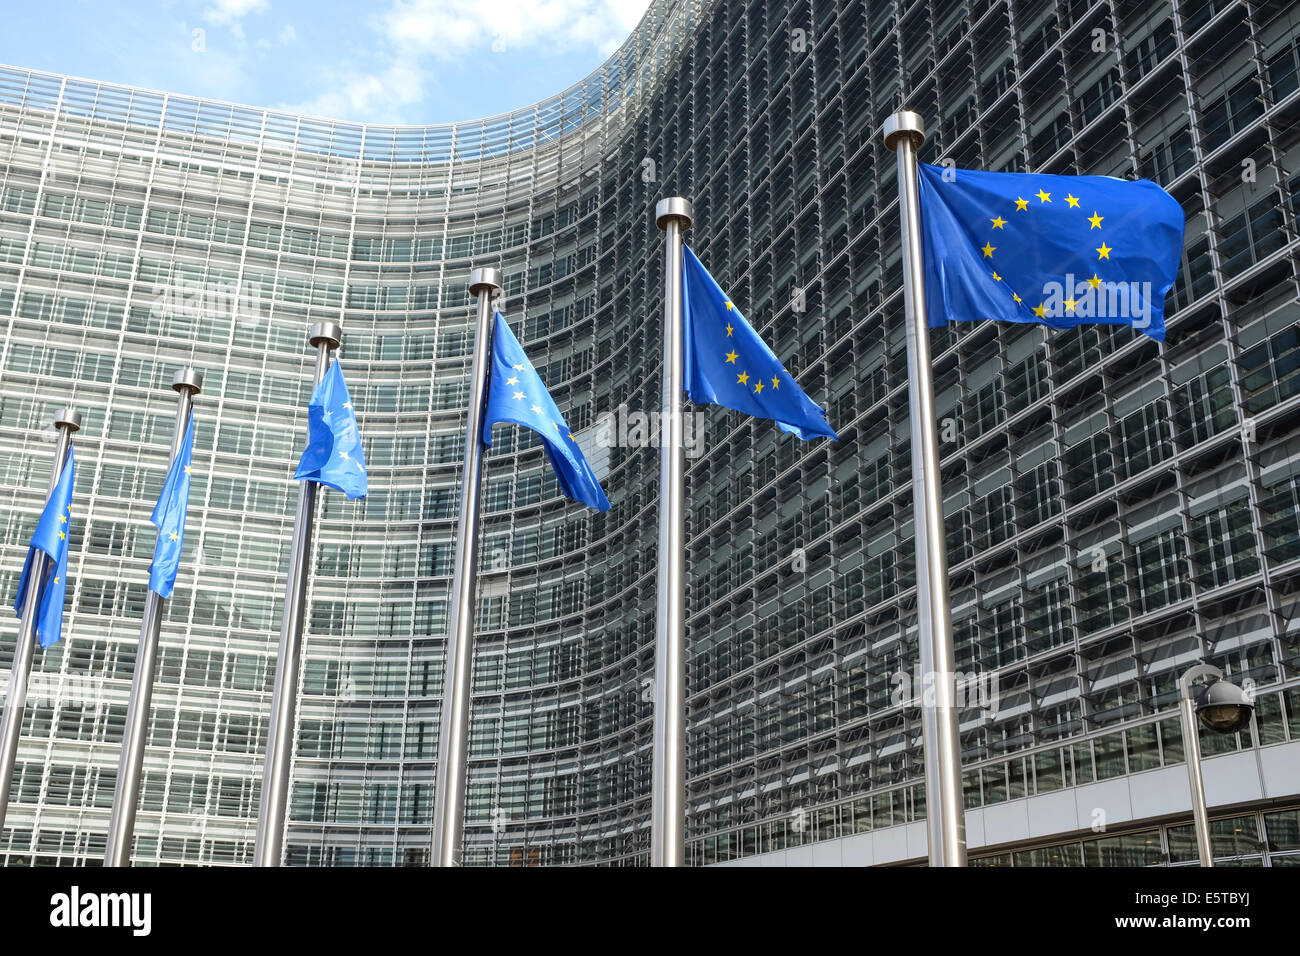 Europäische Union Flaggen vor dem Berlaymont-Gebäude (Europäische Kommission), Wetstraat 200, Brüssel, Belgien Stockfoto